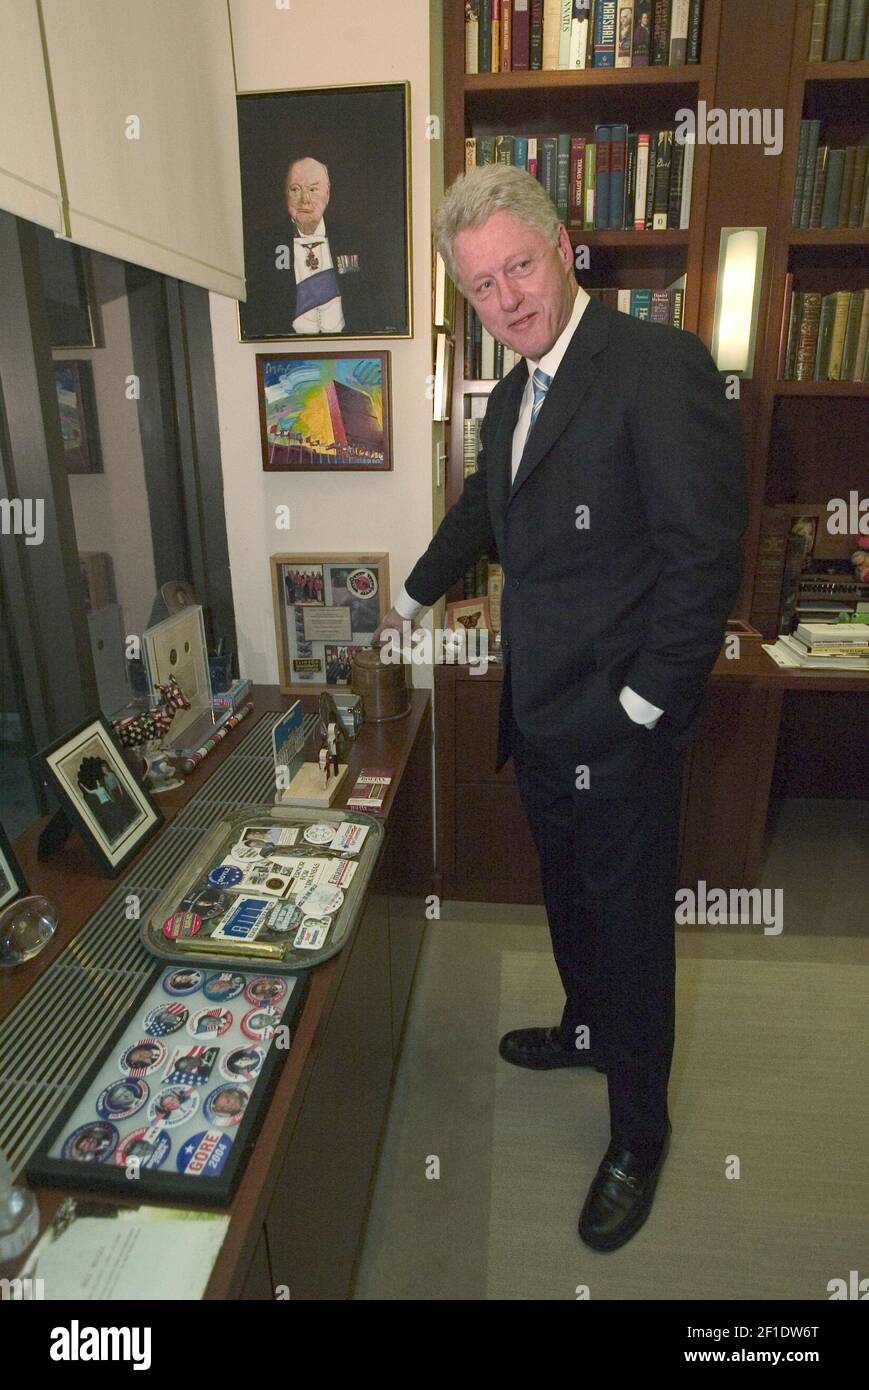 11 de febrero de 2004; Nueva York, NY, EE.UU.; Un día en la vida del ex presidente Bill Clinton en Nueva York. Está mostrando su colección de recuerdos en sus oficinas de Harlem. Crédito obligatorio: Robert Deutsch-USA TODAY /Sipa USA Foto de stock